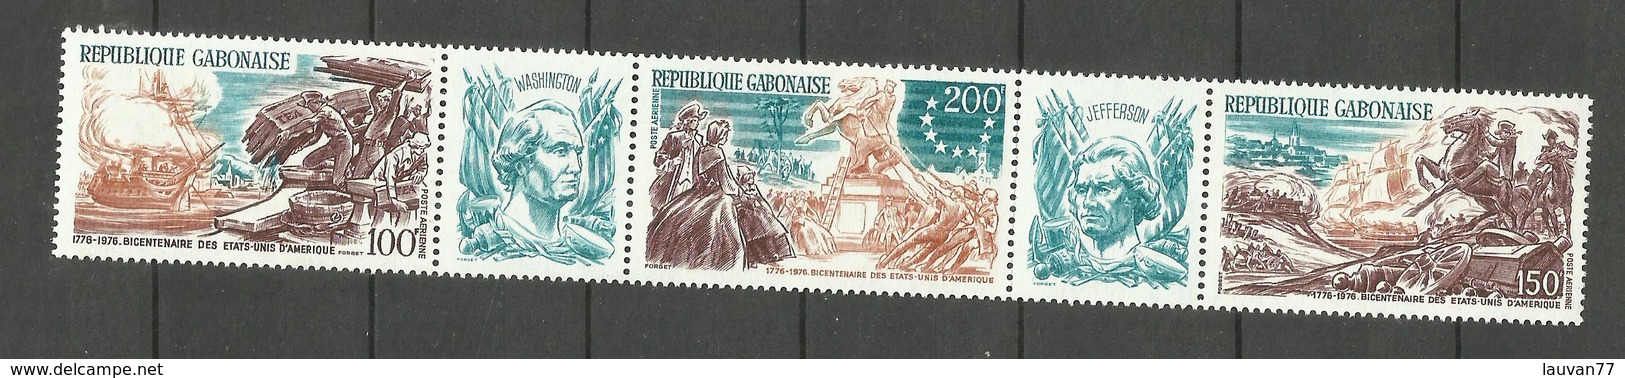 Gabon Poste Aérienne N° 180A Neuf** Cote 7.55 Euros - Gabon